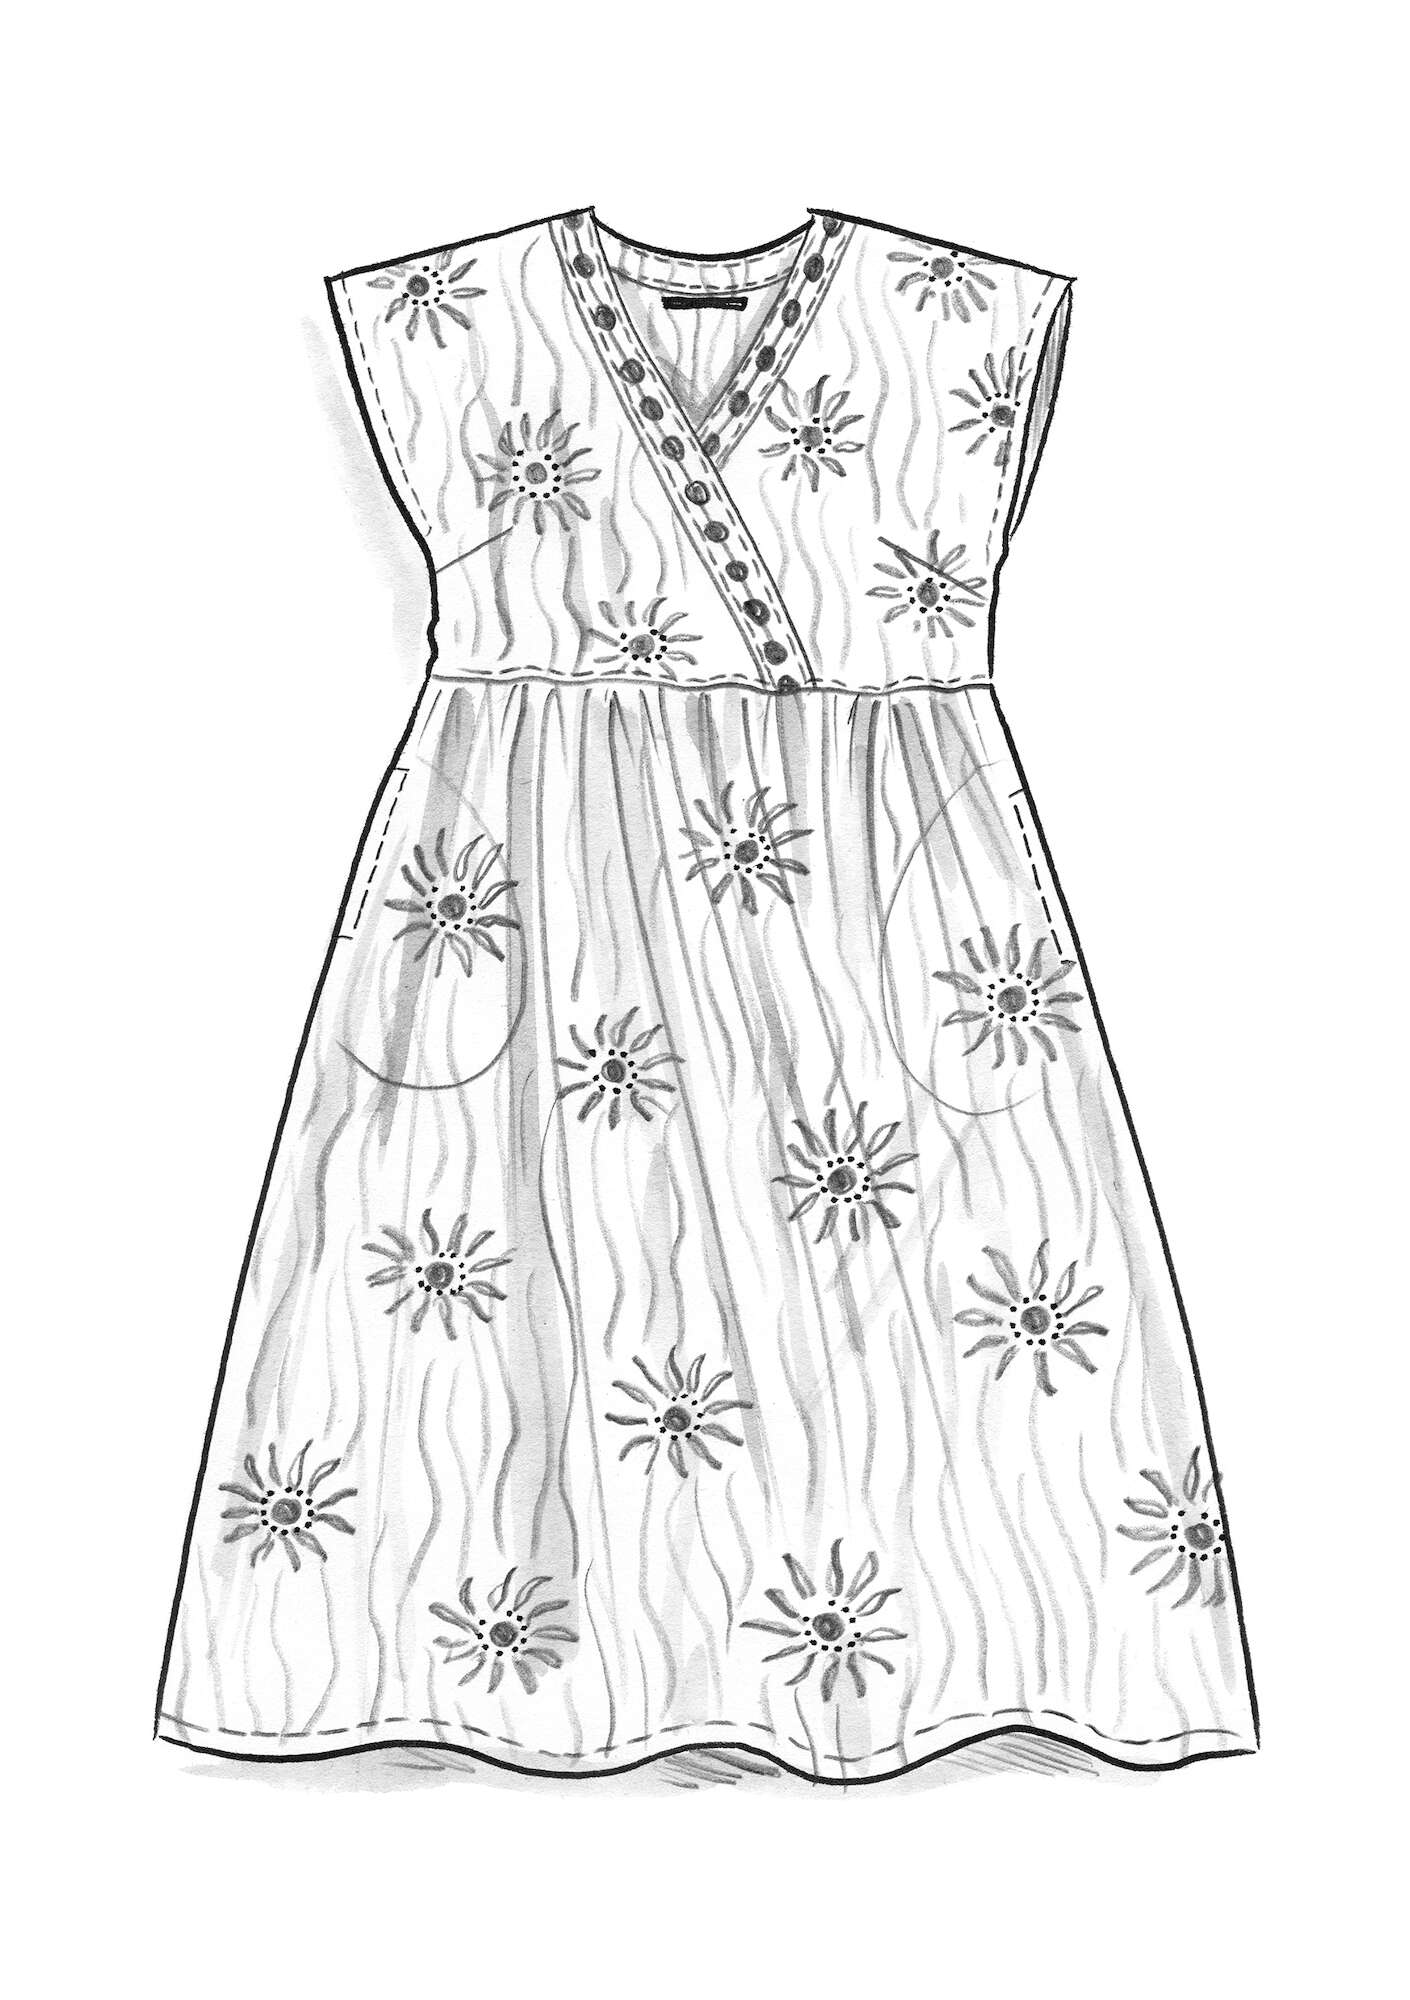 Geweven jurk  Makutsi  van biologisch katoen laguneblauw